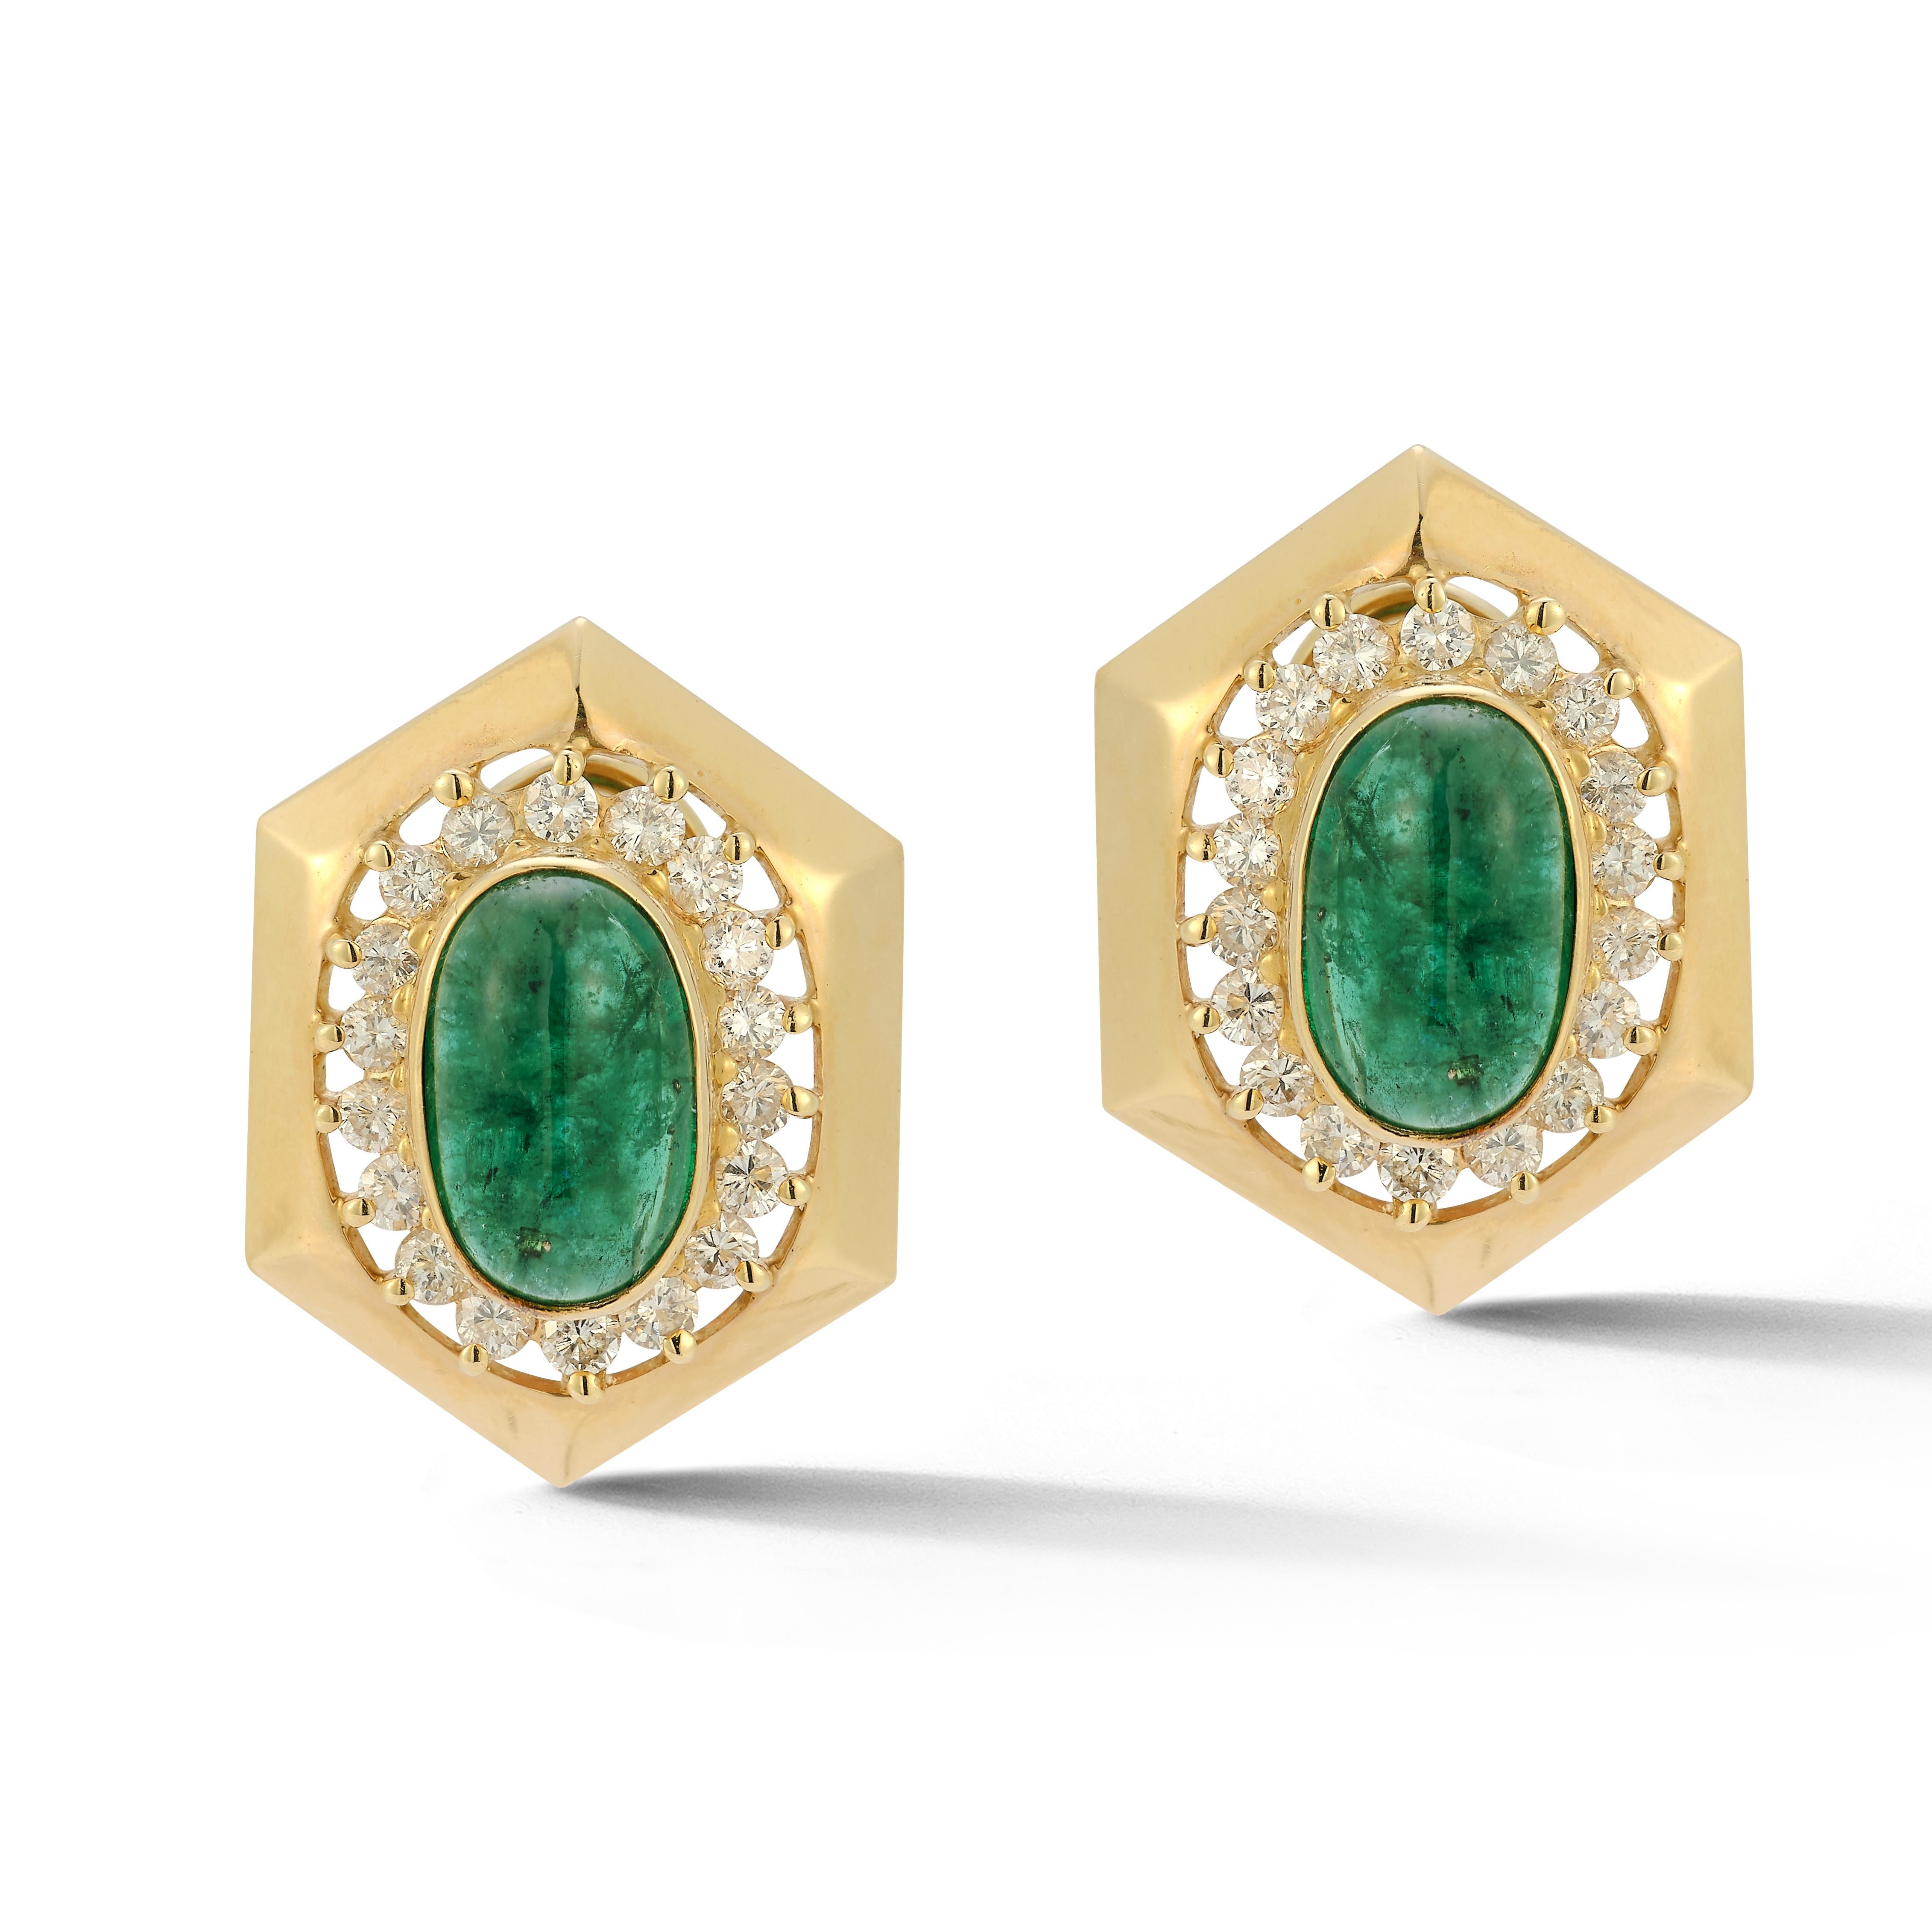 Cabochon Smaragd & Diamant-Ohrringe

Clip auf Ohrringe mit einer Post, die jeweils mit einem Zentrum Cabochon Smaragd mit einem Halo von runden Diamanten in 14k Gold gesetzt

Ungefähres Gewicht des Smaragds: 10,06ct

Ungefähres Gesamtgewicht der